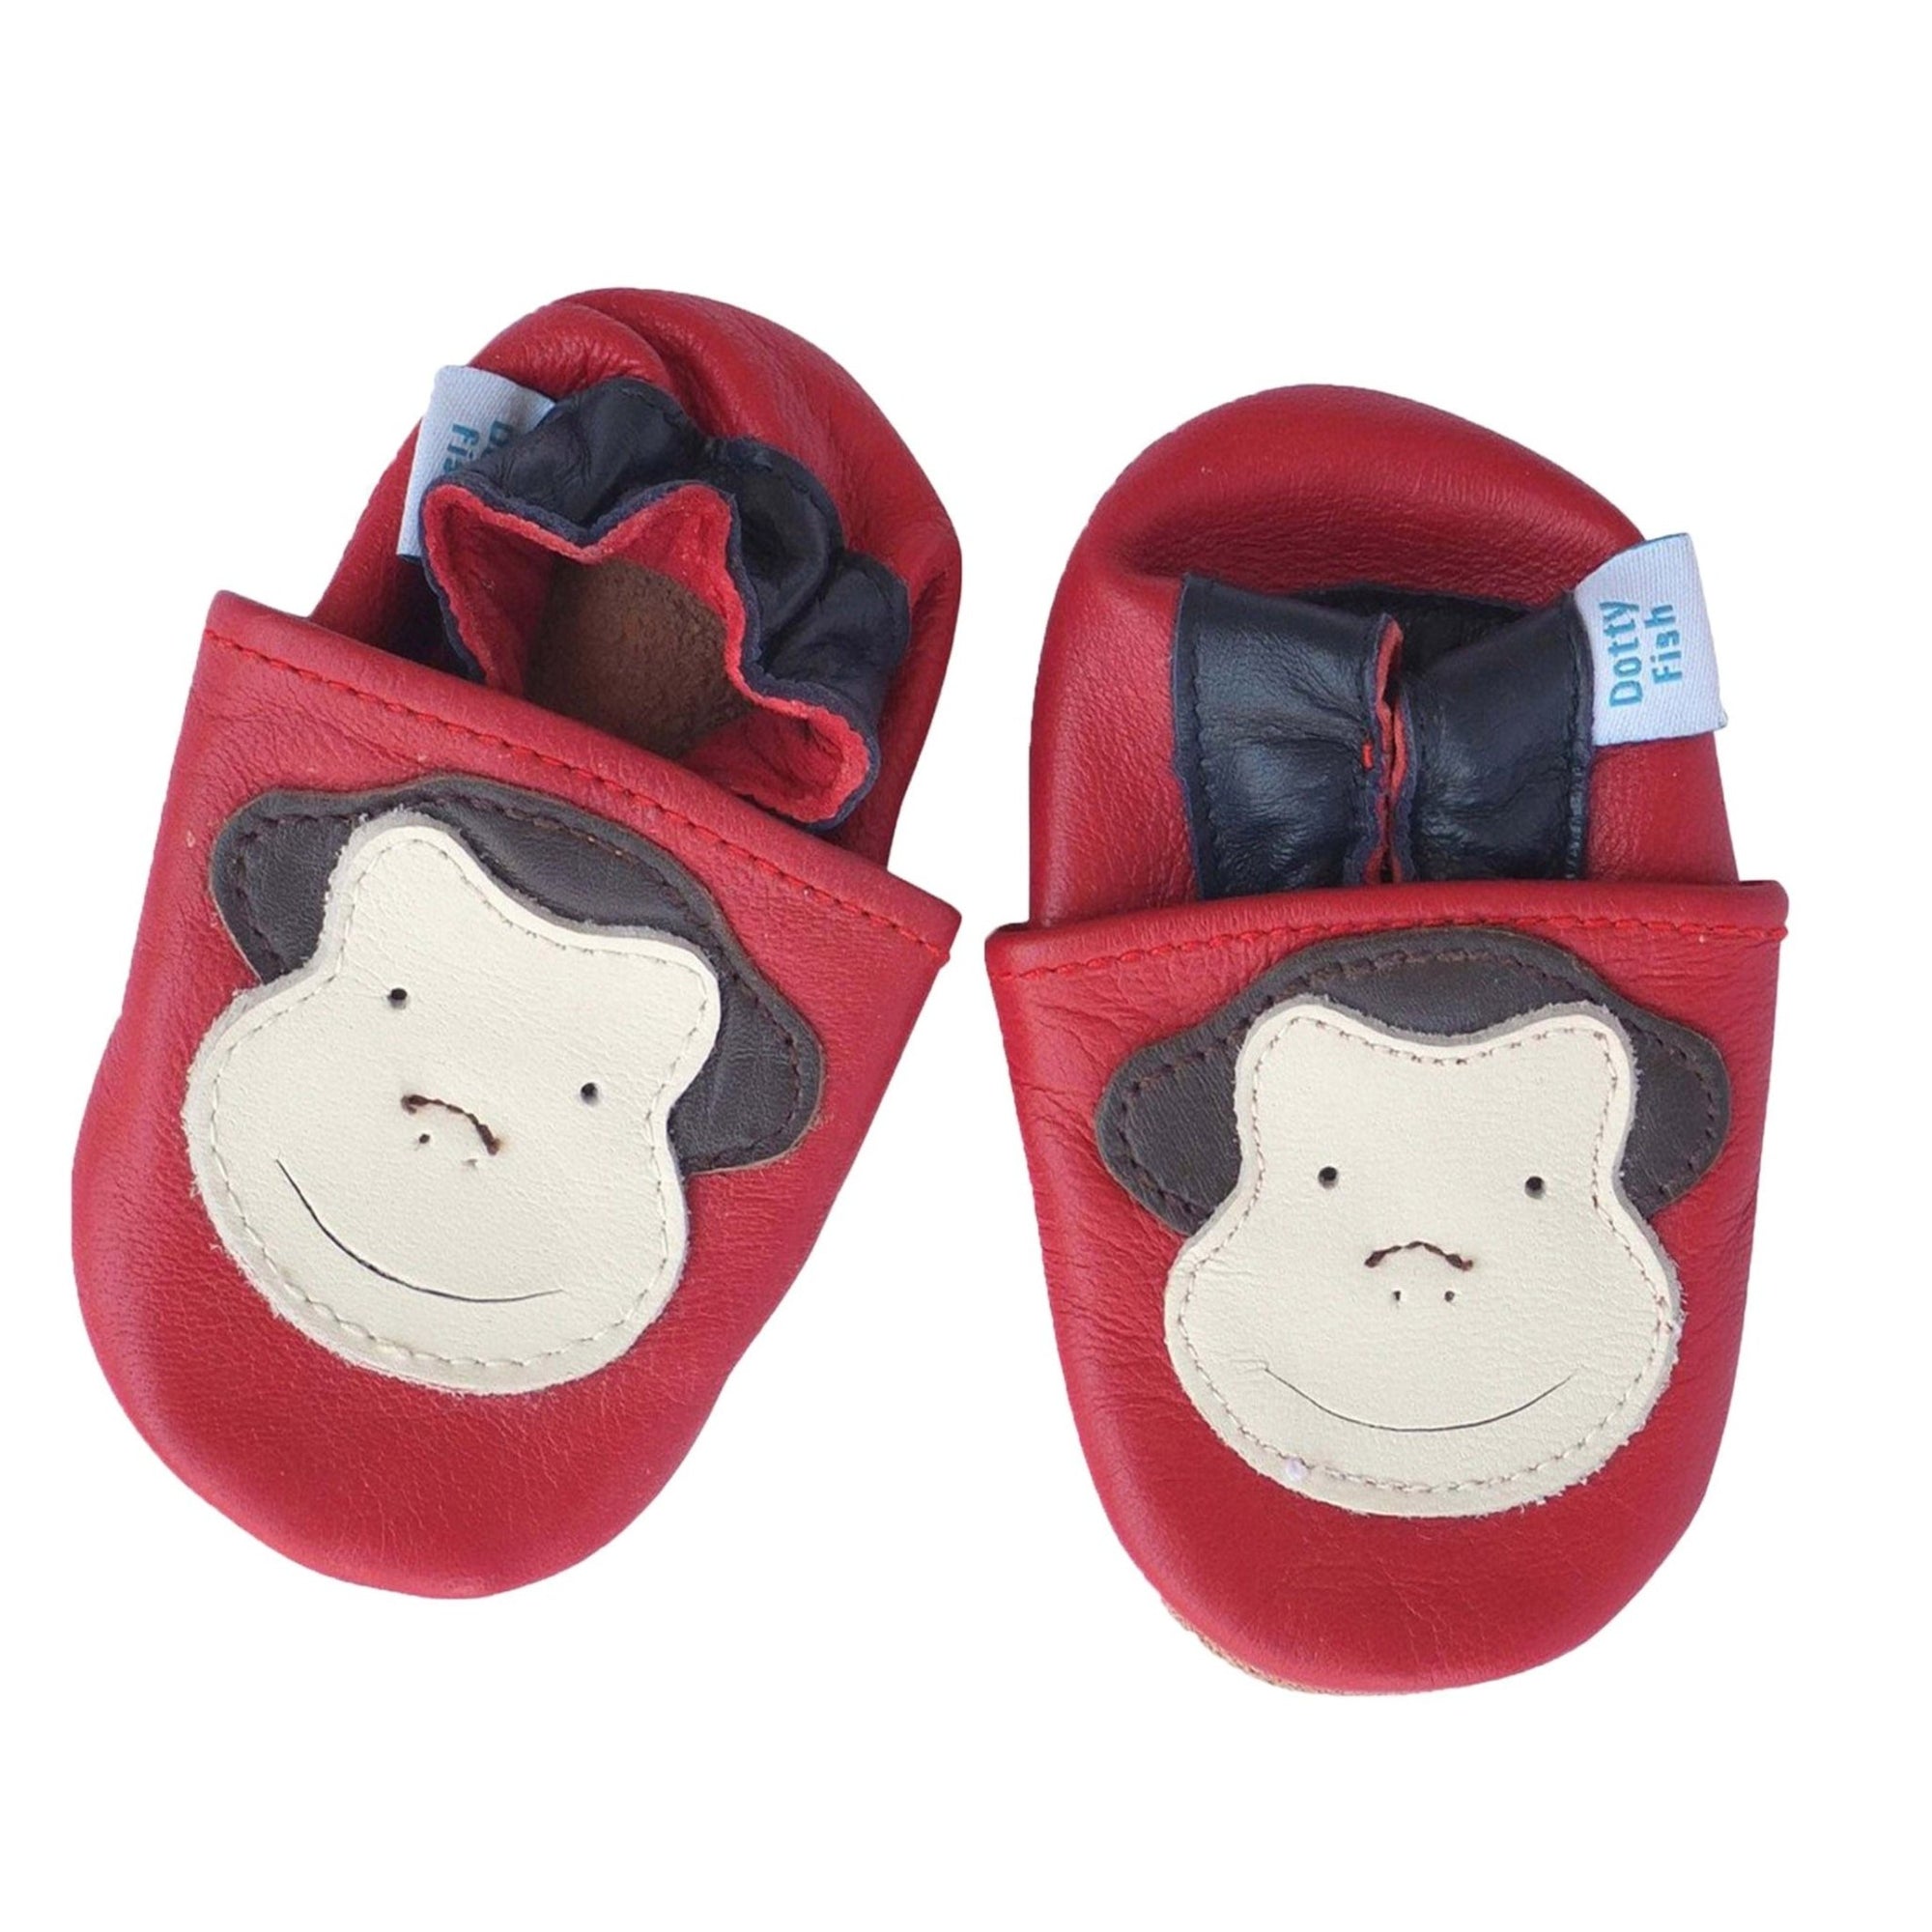 Unisex Soft Leather Elasticised Pram Shoes - Red Monkey - Shoeq